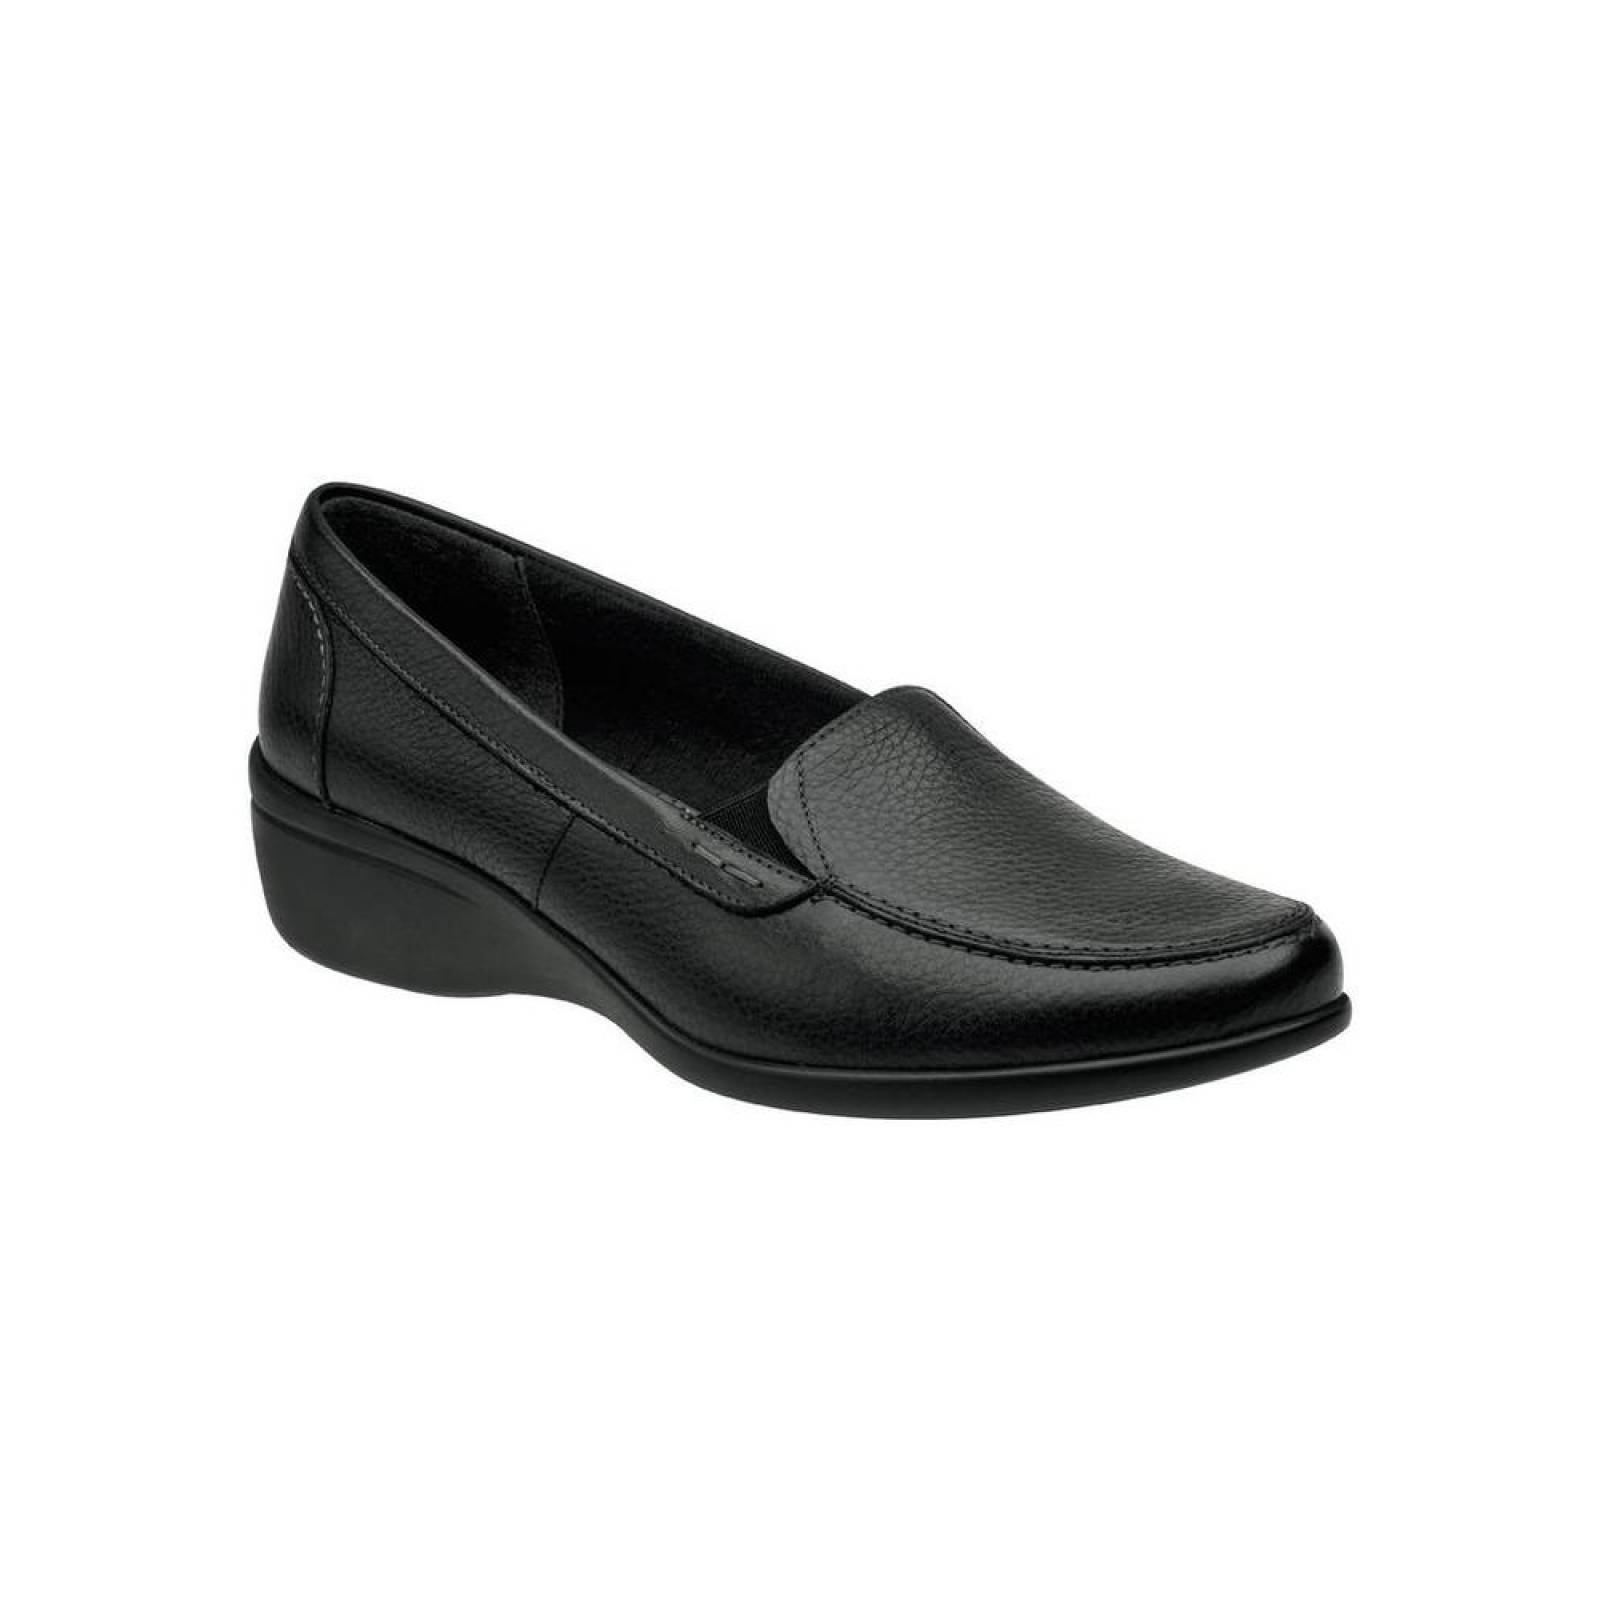 Zapato Confort Mujer Flexi Negro 02501713 Piel 